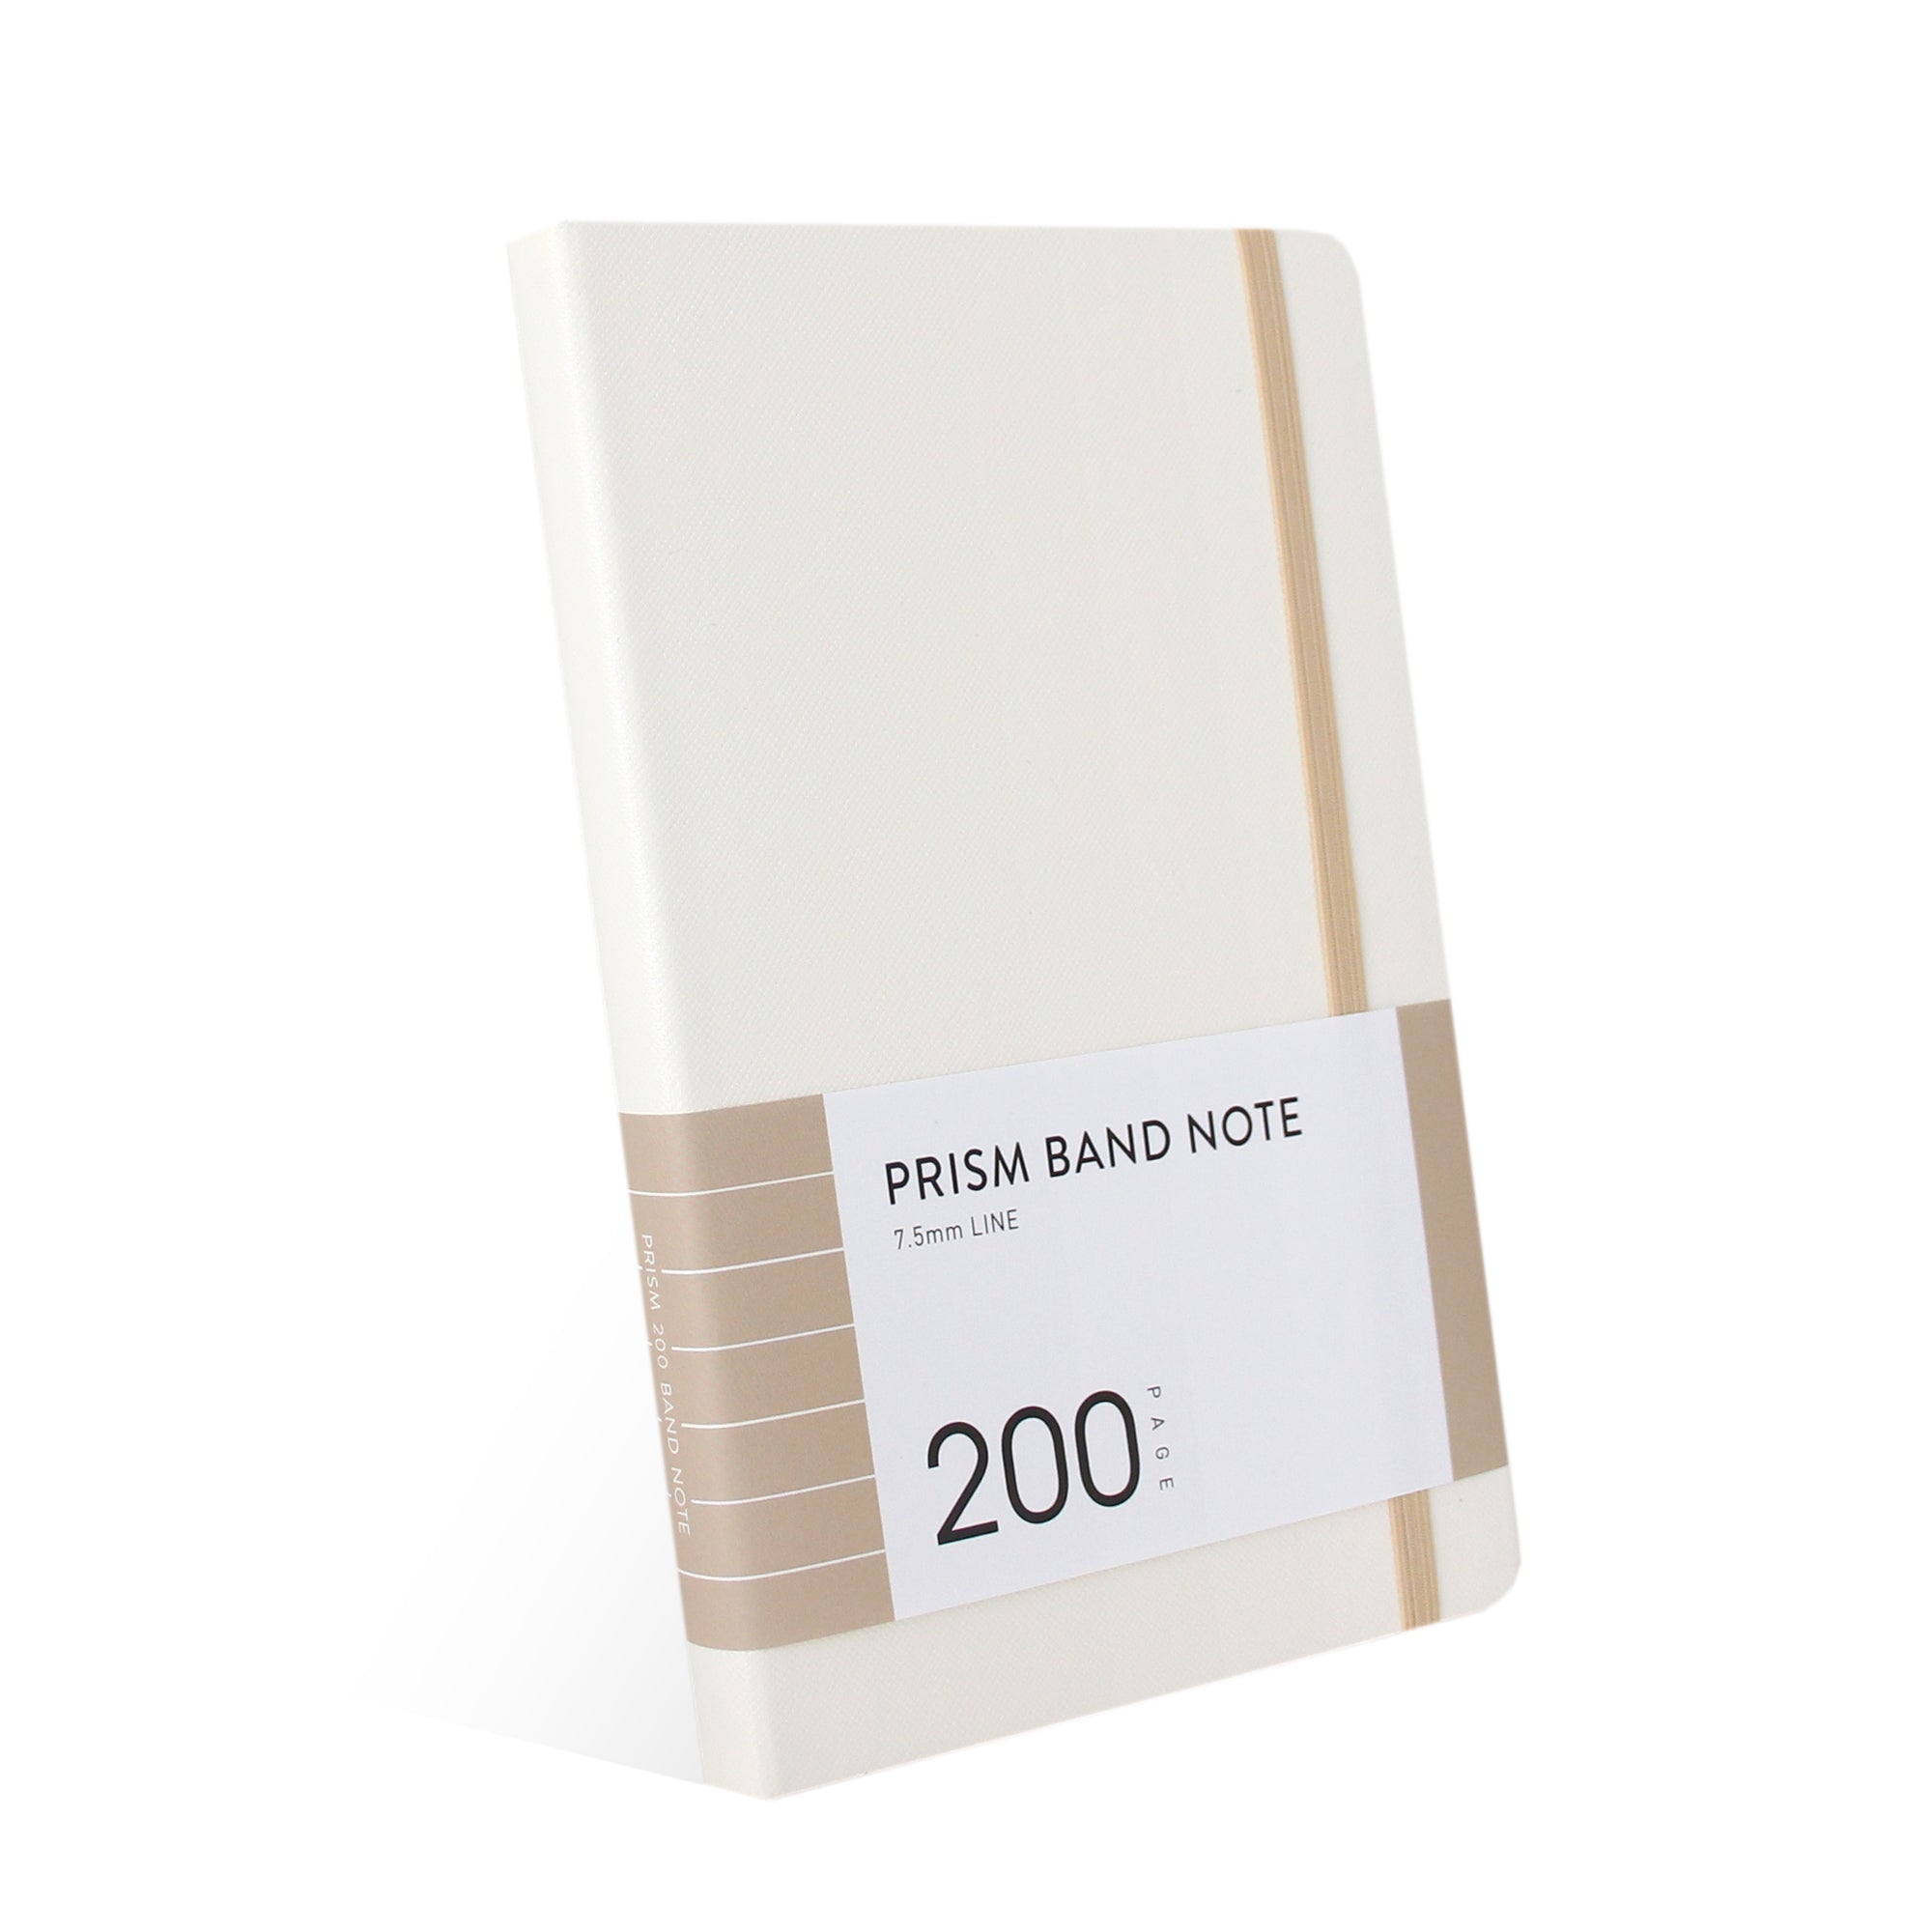 INDIGO Prism 200 Line Band note